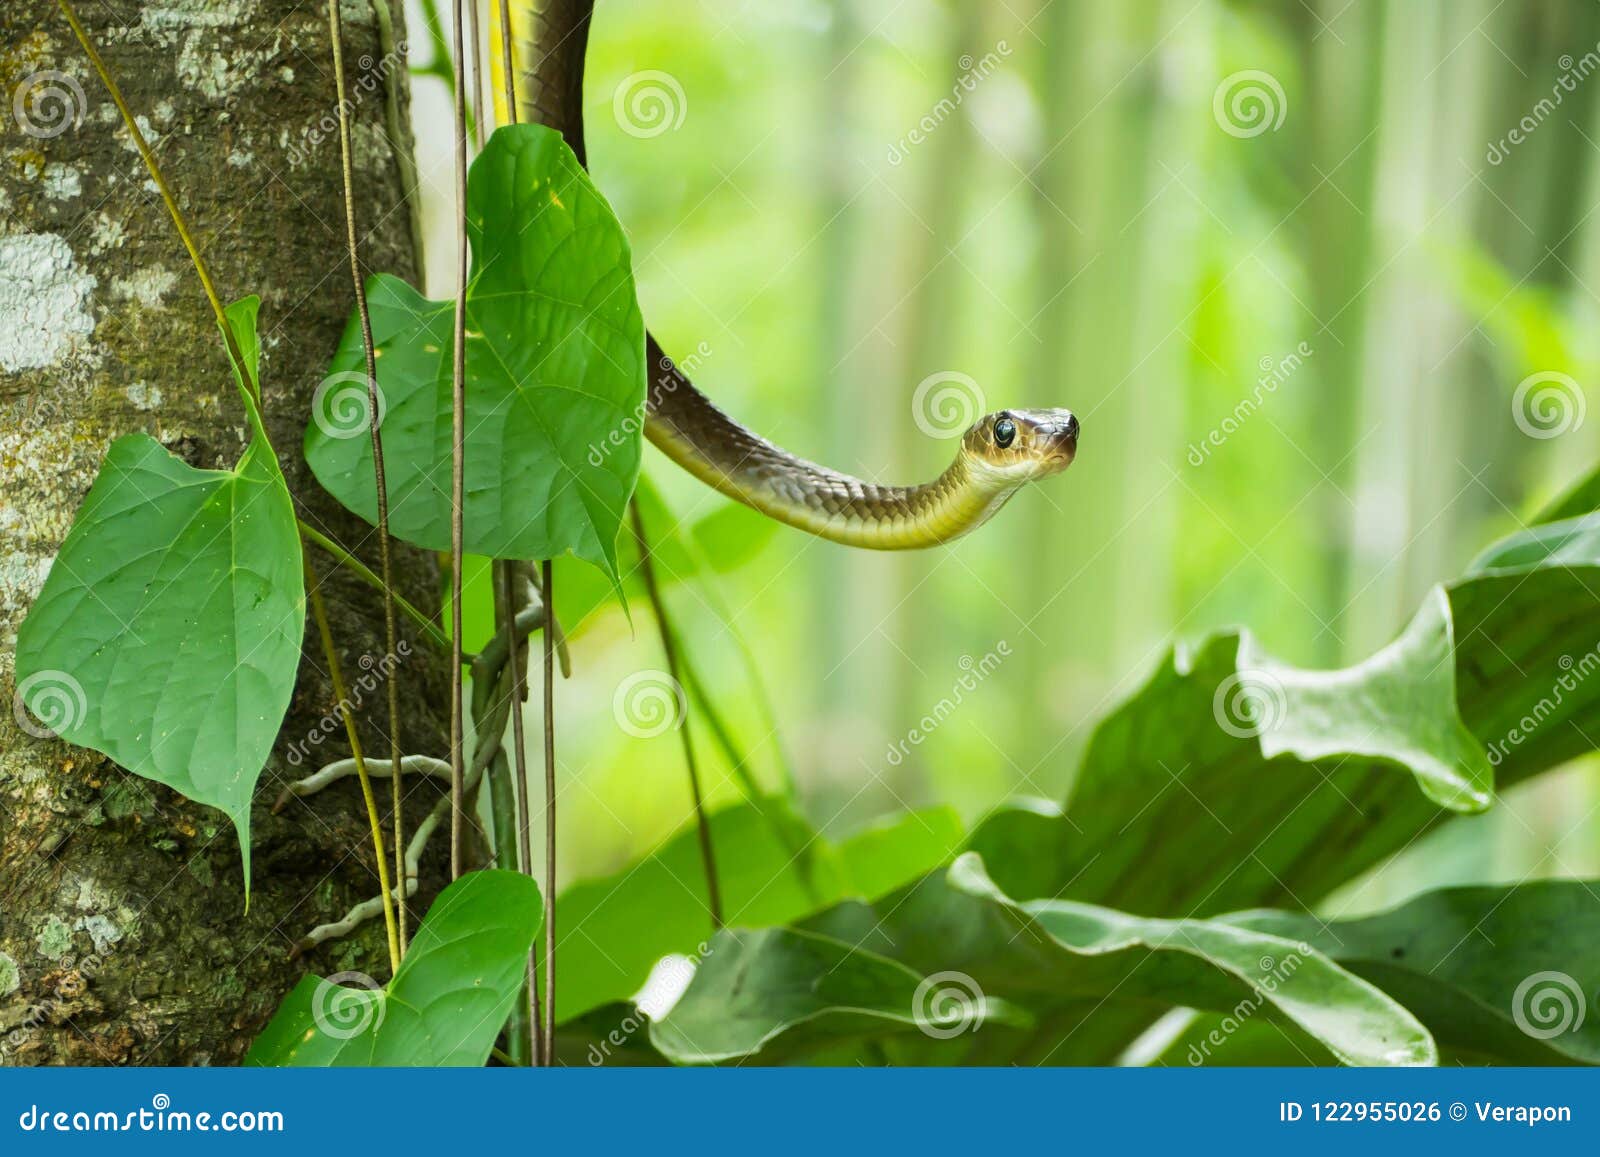 树枝上的犀鼠蛇 库存照片. 图片 包括有 野生生物, 查出, 没人, 射击, 其他, 背包, 木头, 有角 - 176180552